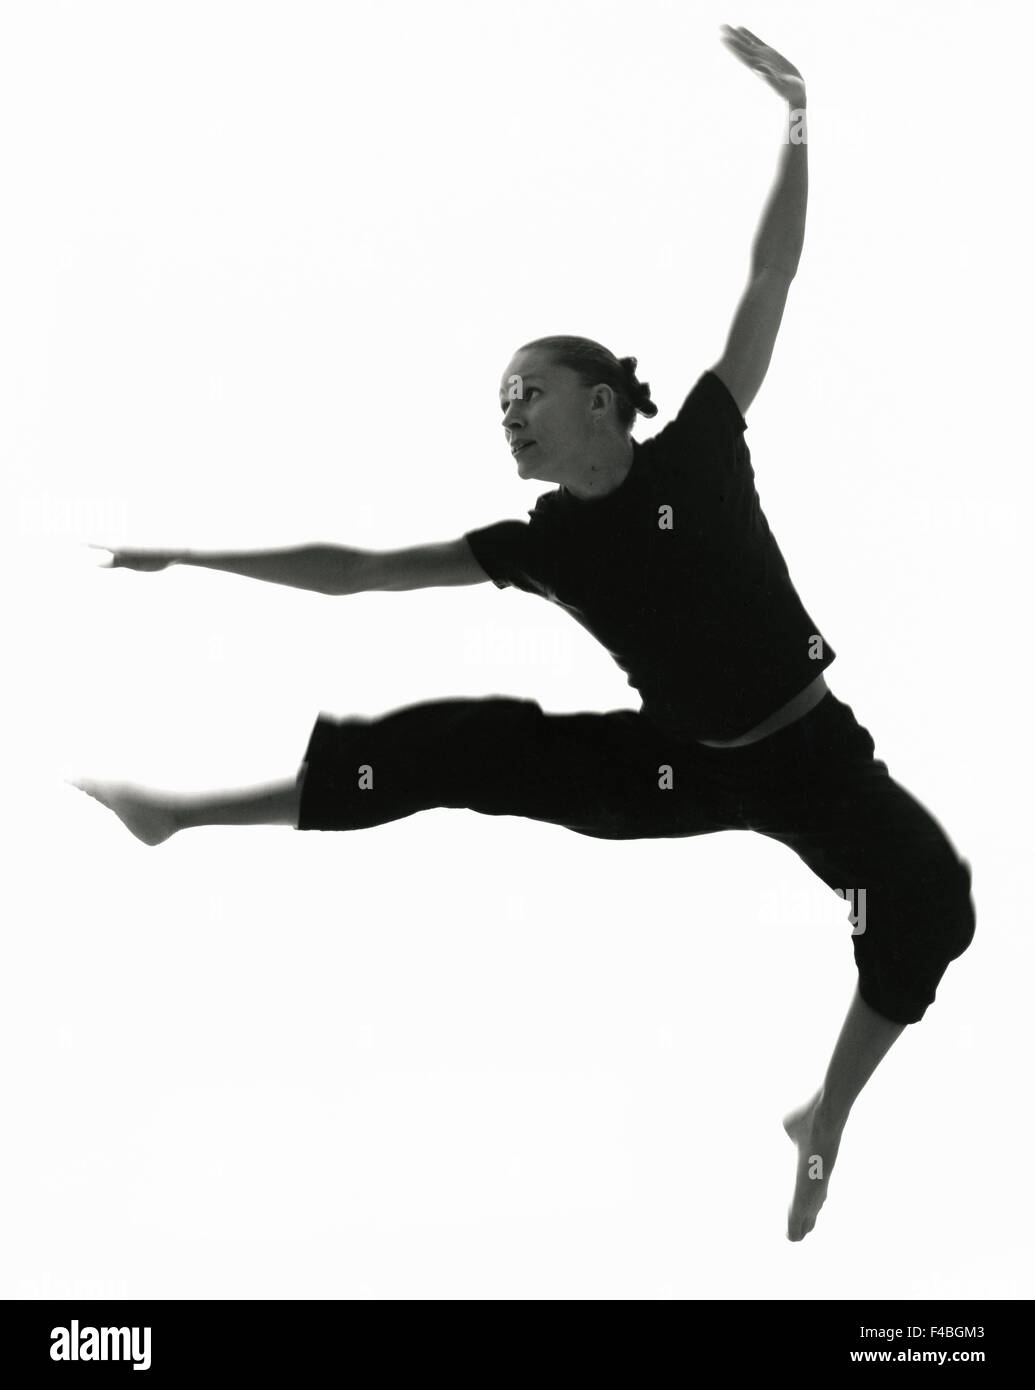 20-24 Jahre Erwachsene nur barfuß schwarz-weiß Körpersprache Katalog 2 Kulturleben Kultur tanzen horizontale drinnen Stockfoto